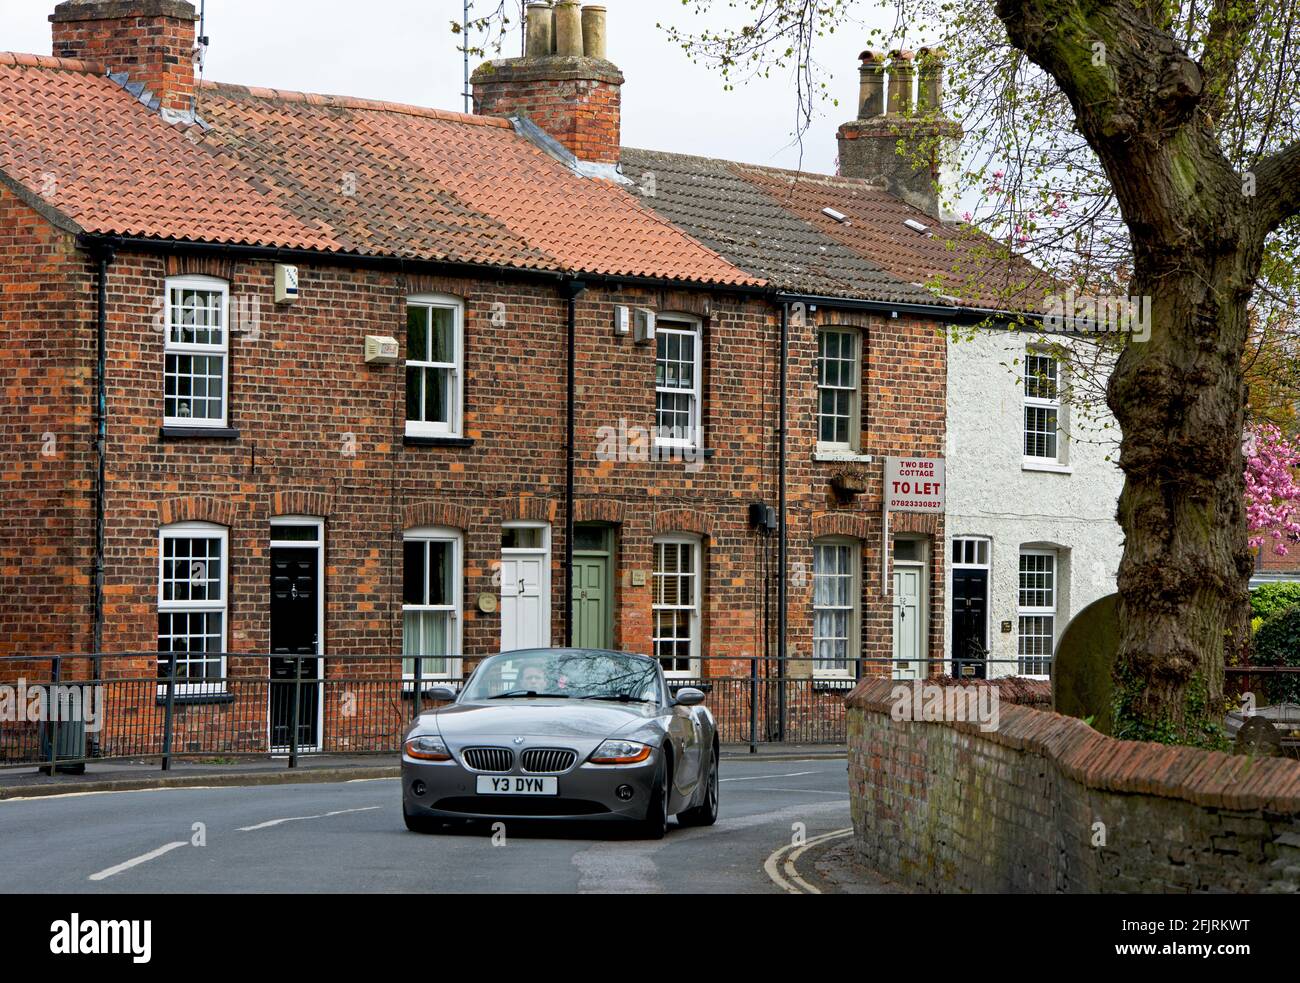 BMW-Sportwagen, der an einer Reihe von gemauerten Reihenhäusern in Cottingham, East Yorkshire, England, vorbeifährt Stockfoto